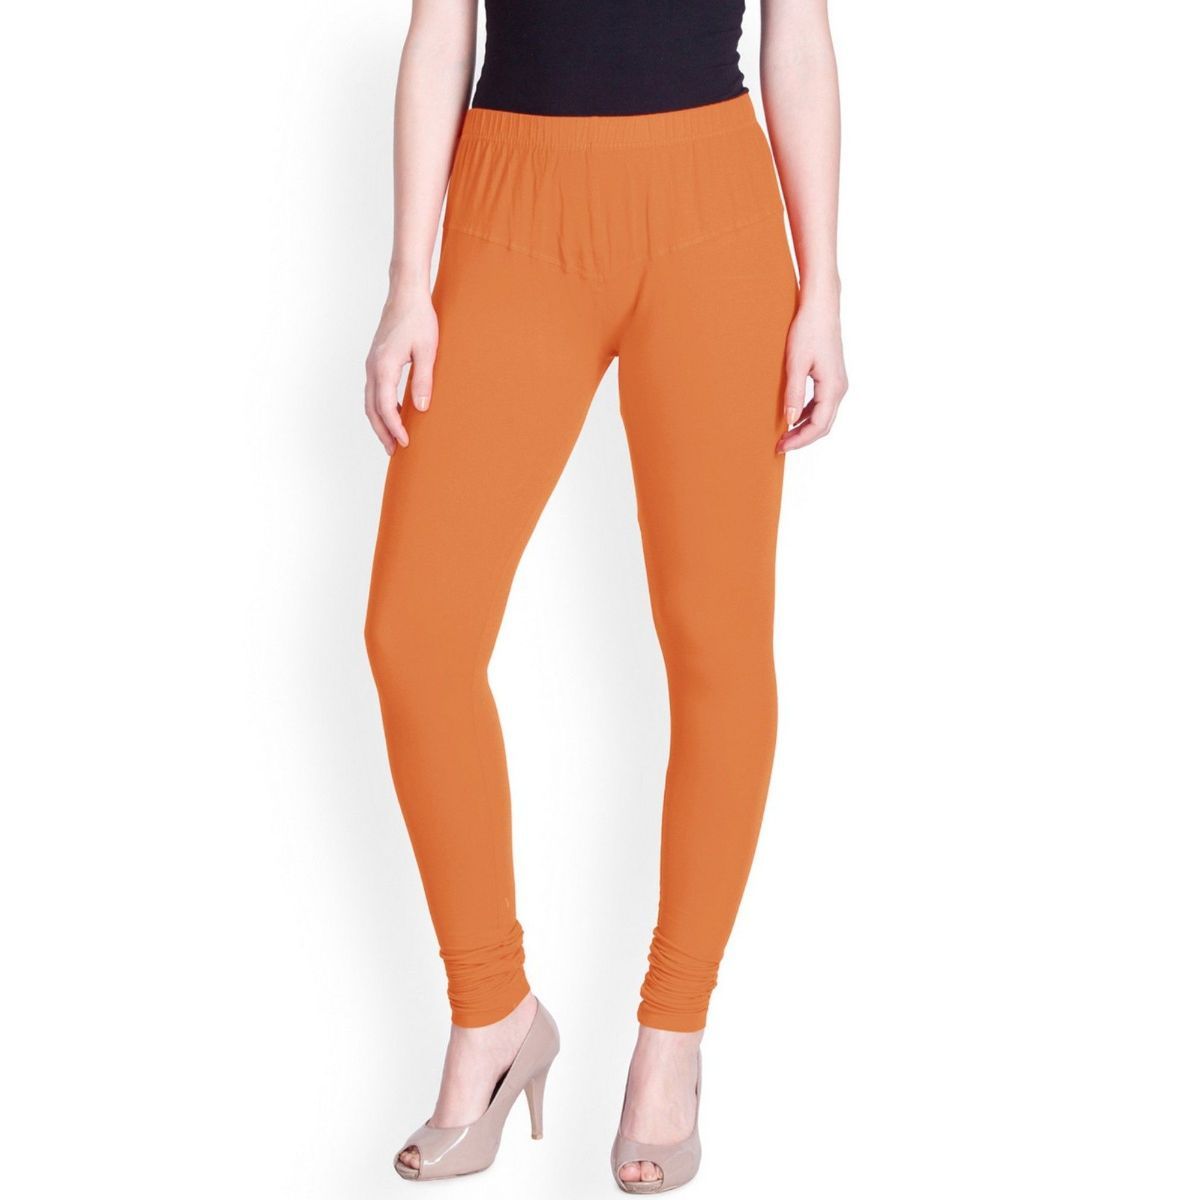 Lyra Orange Free Size Churidar Leggings - LYRA - 4057687